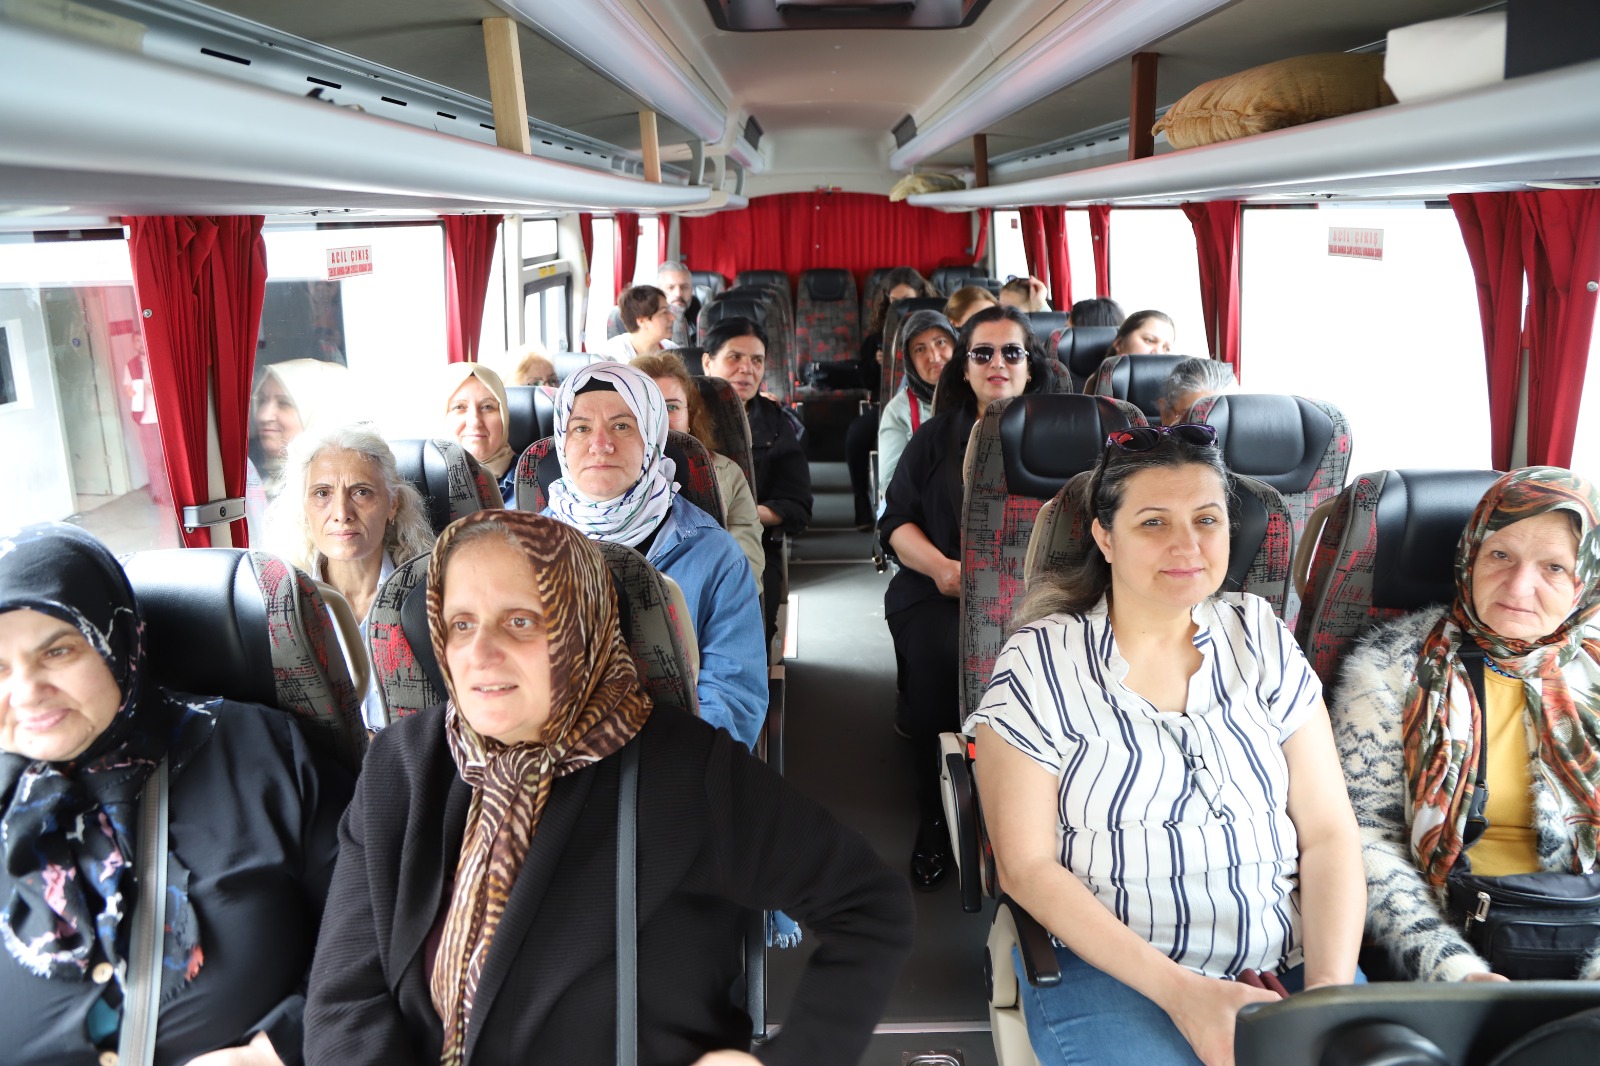 Belediye faaliyetleri Kartallı kadınlara gezi turlarıyla tanıtılıyor